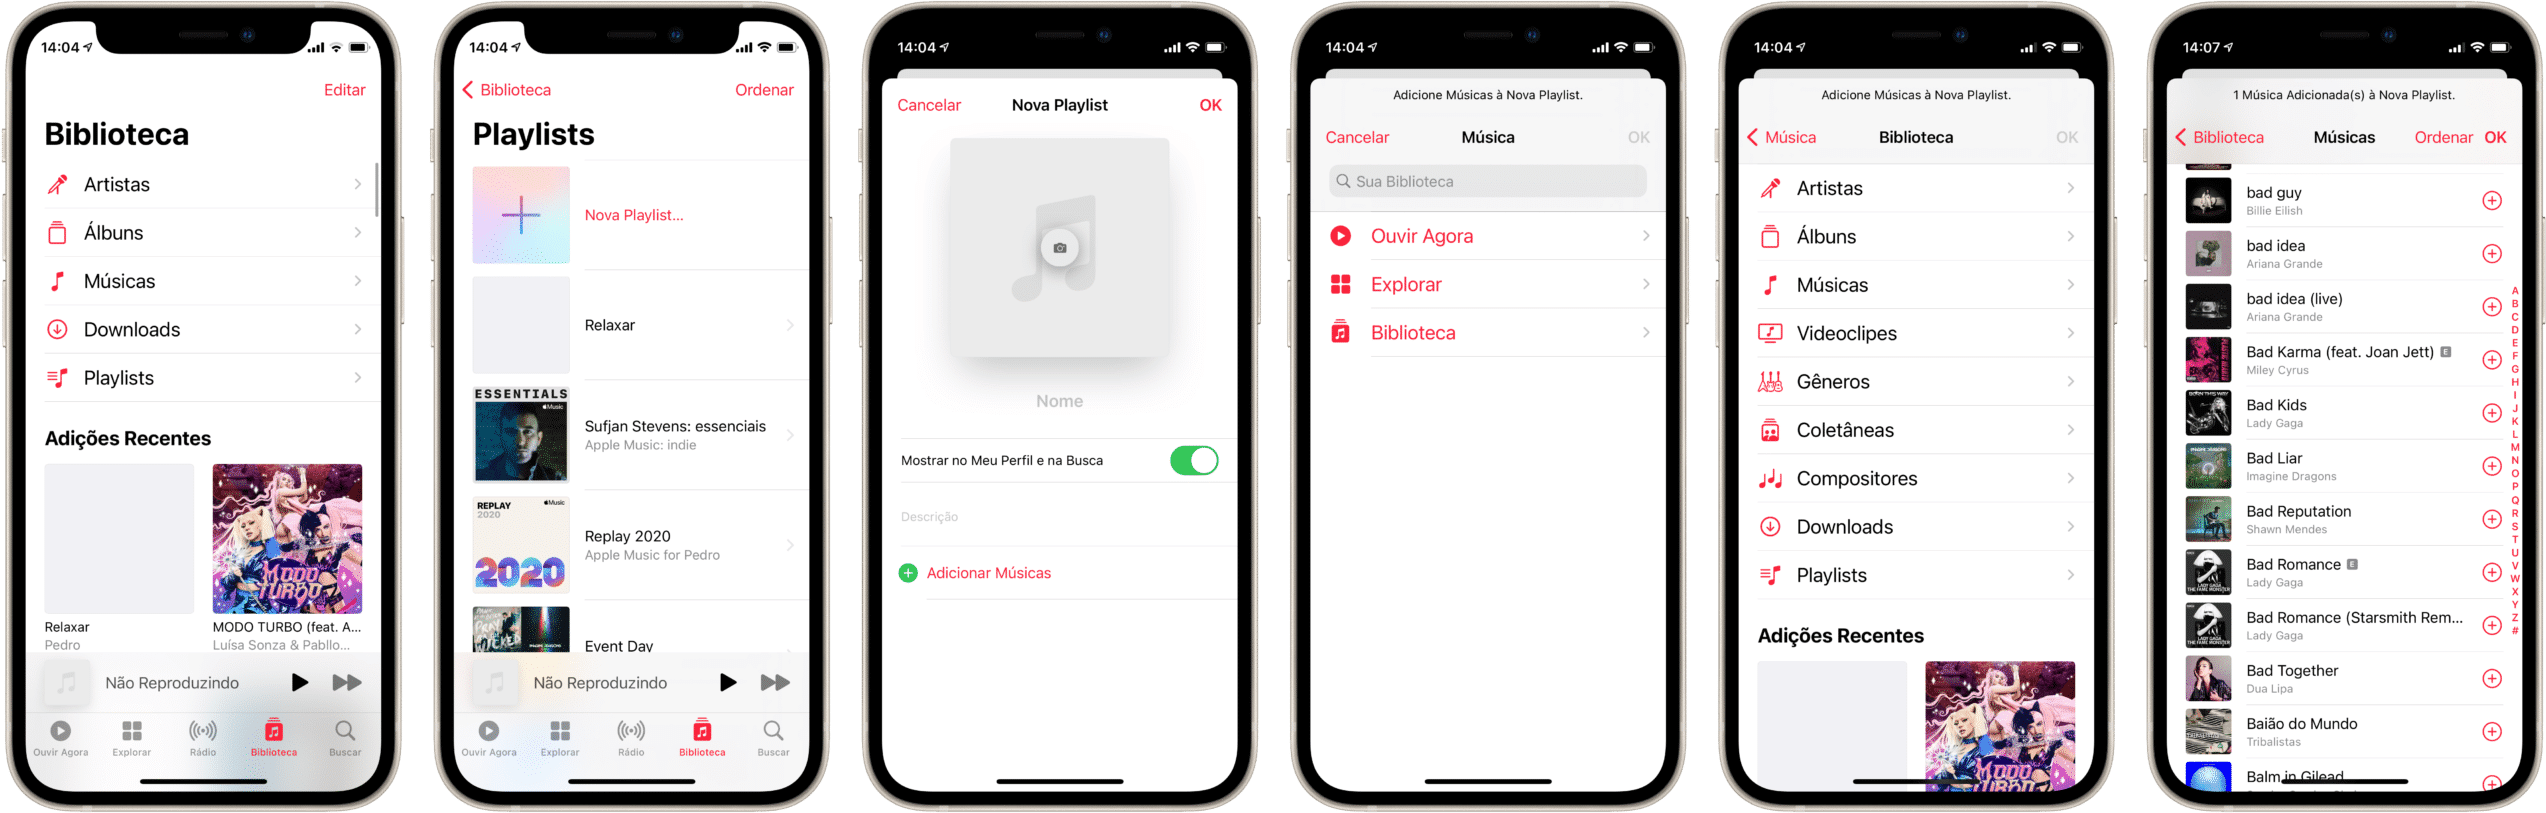 Crear una lista de reproducción en Apple Music en iPhone